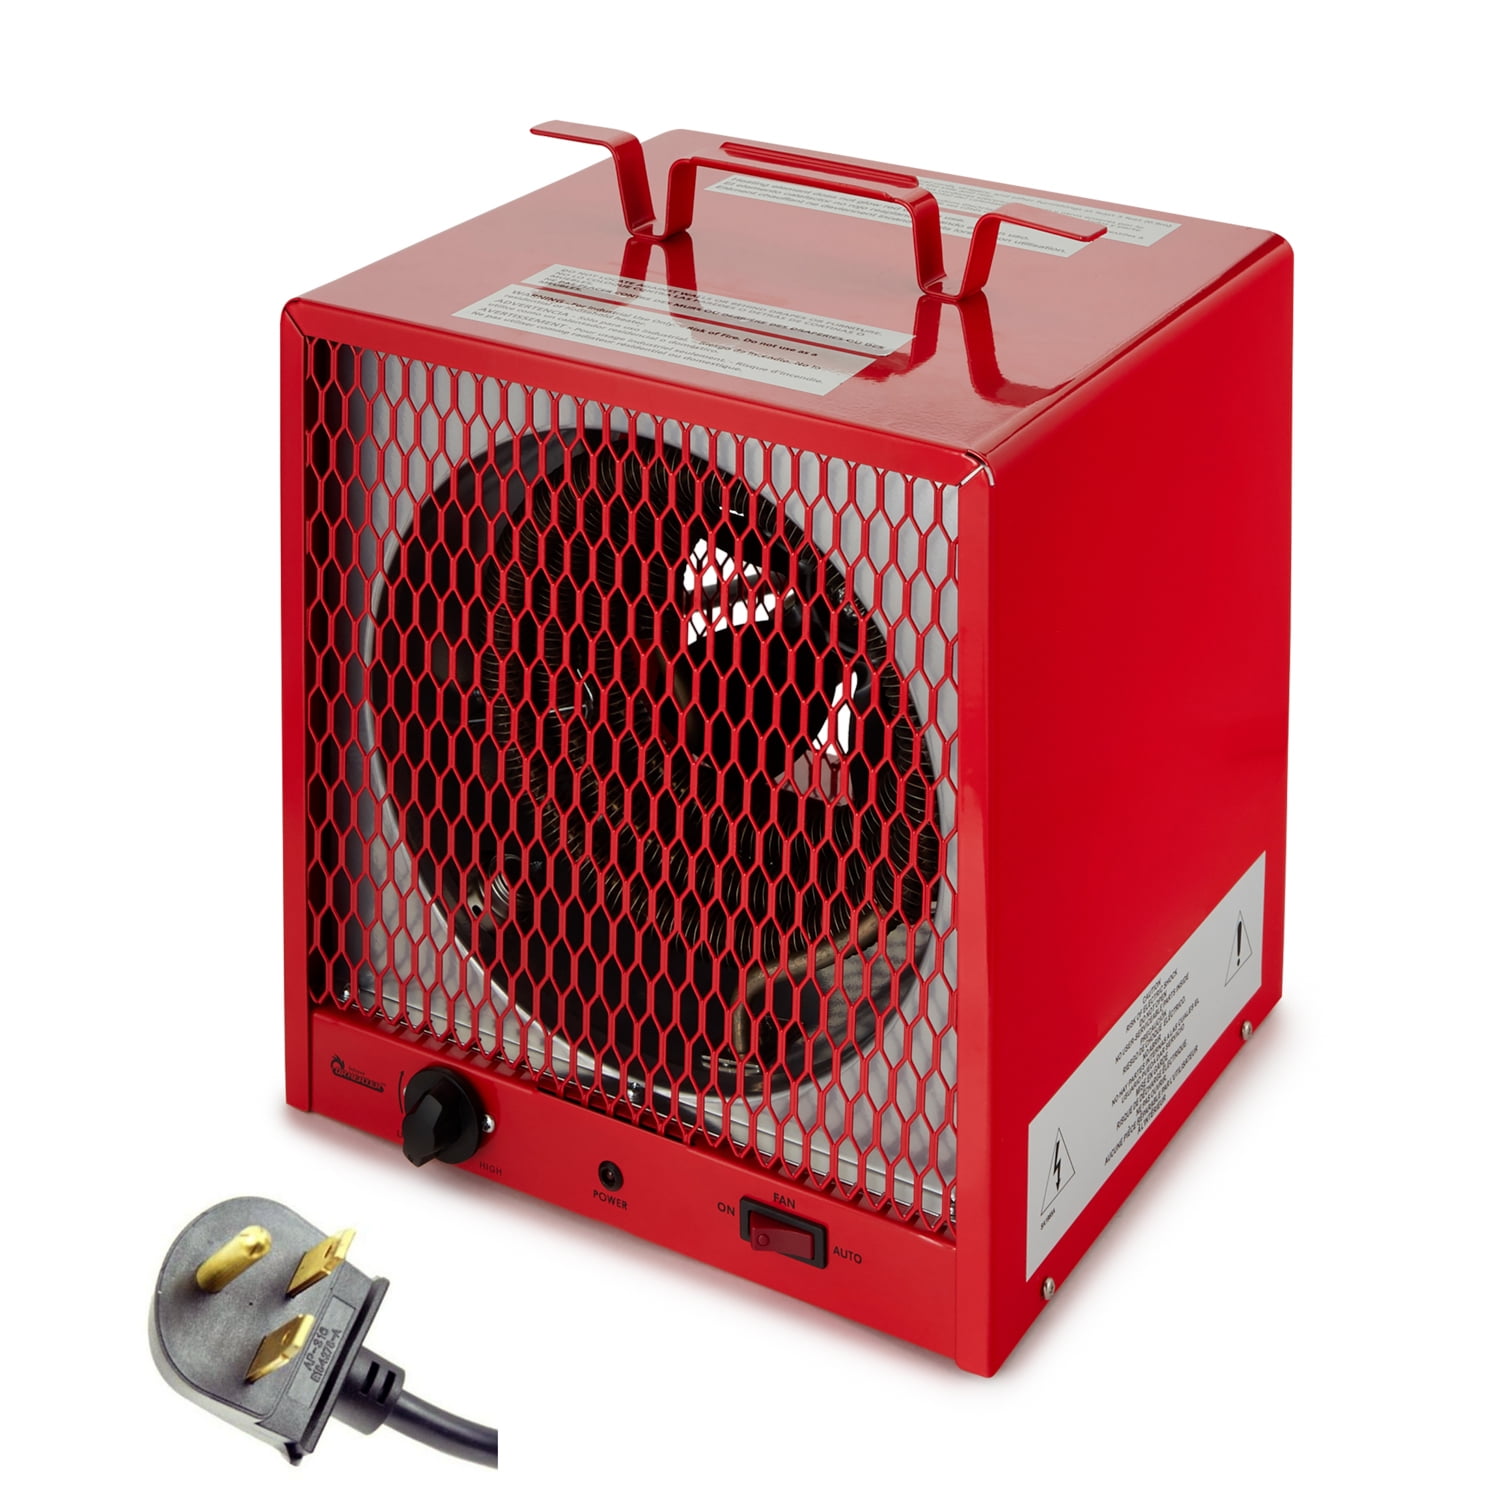 Dr Infrared Heater 240 Volt 5600 Watt Garage Workshop Portable Space Heater 